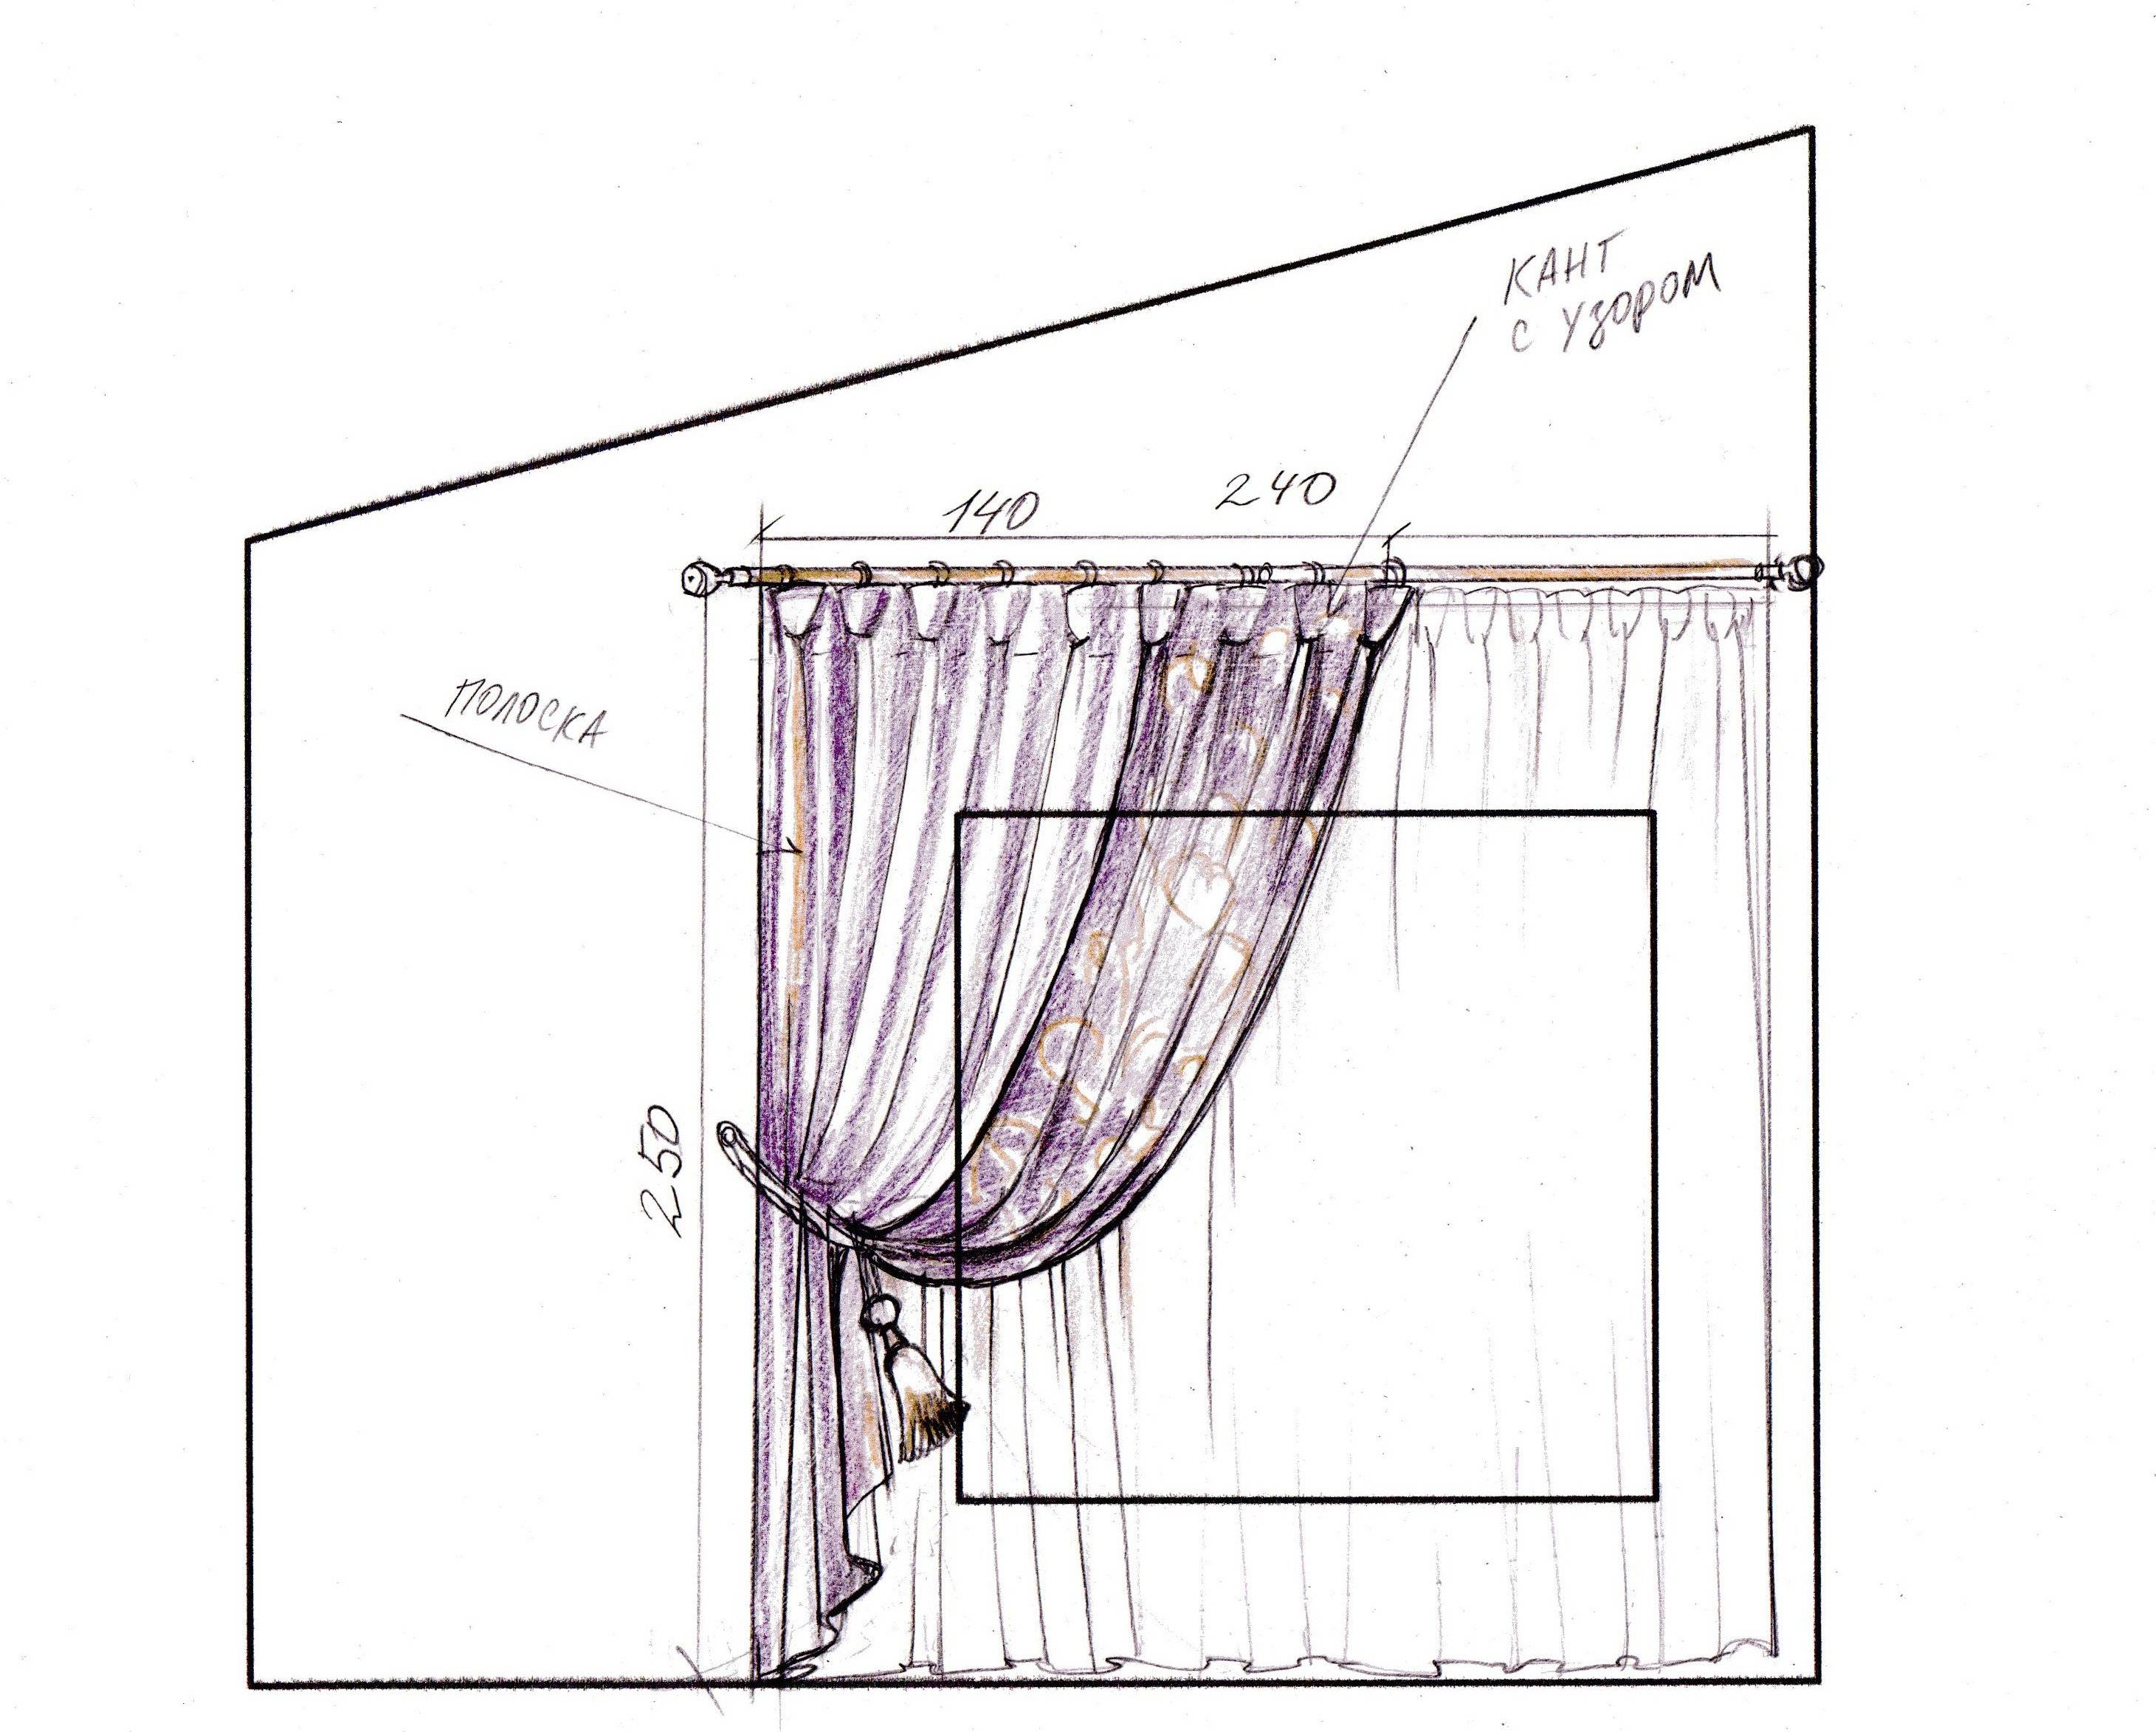 Тюль на окна: варианты оформления окон тюлем в разных помещениях (110 фото)